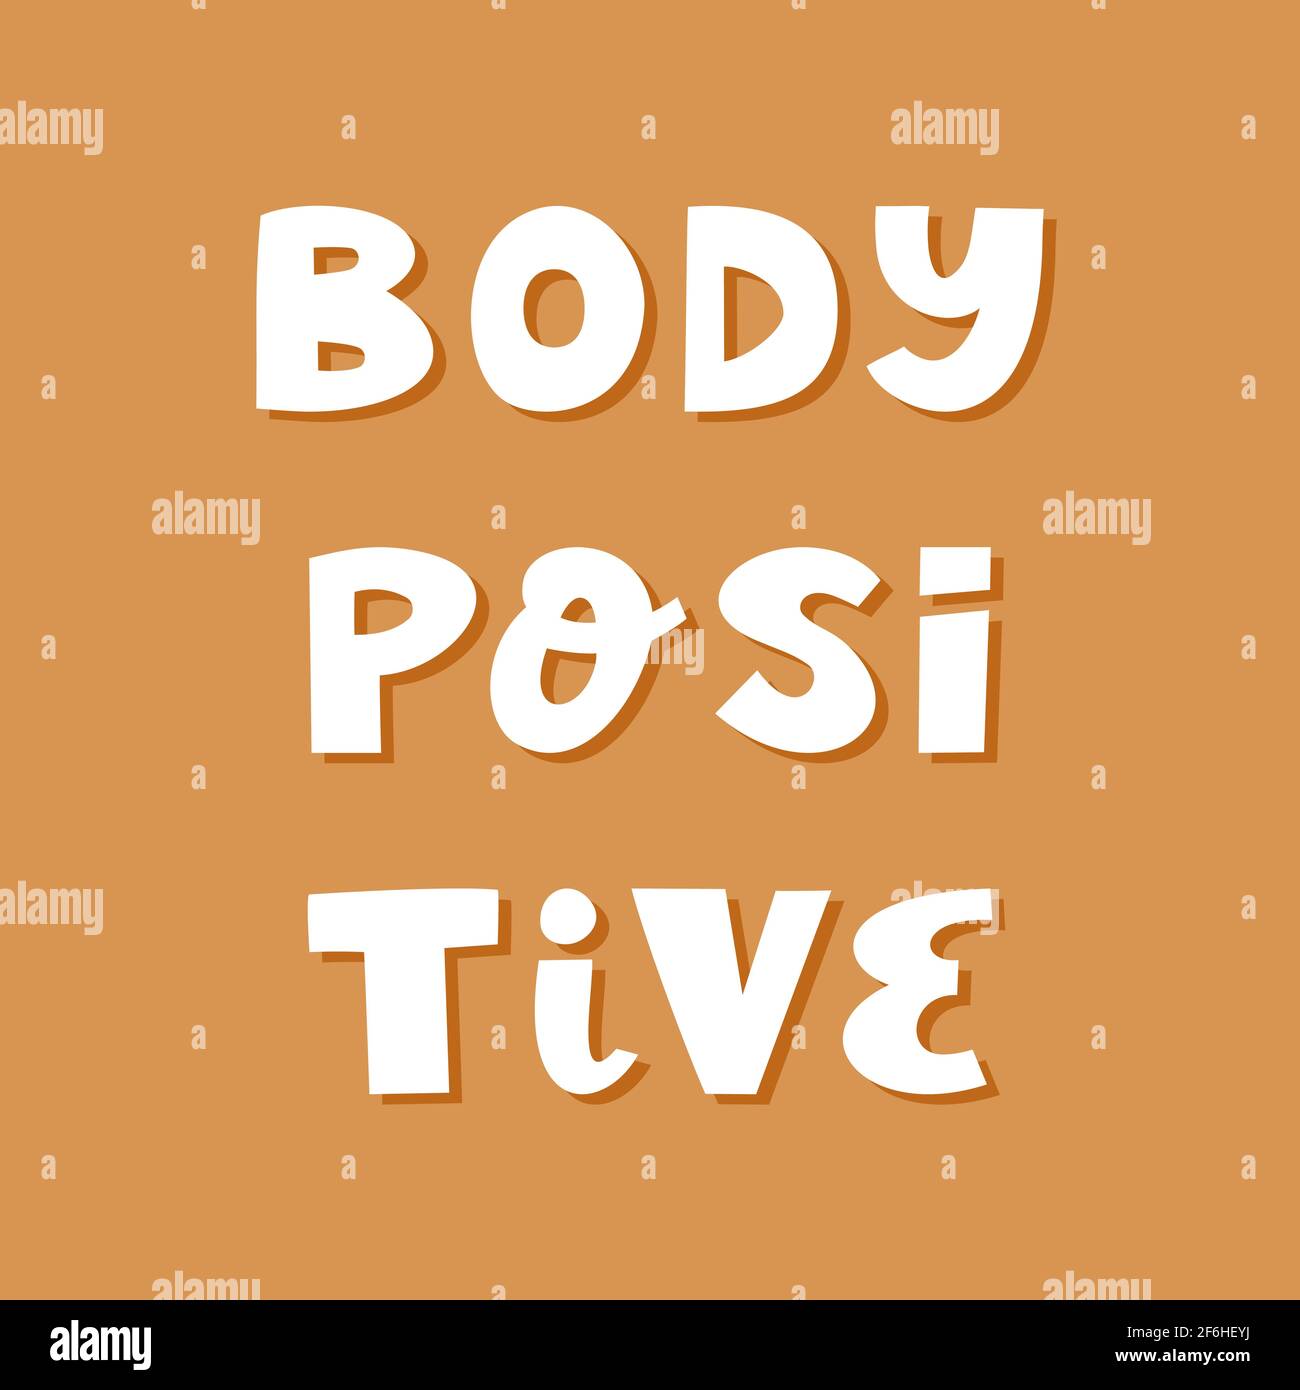 Körper positiv. Niedliche handgezeichnete Schriftzüge im modernen skandinavischen Stil auf braunem Hintergrund. Stock Vektor